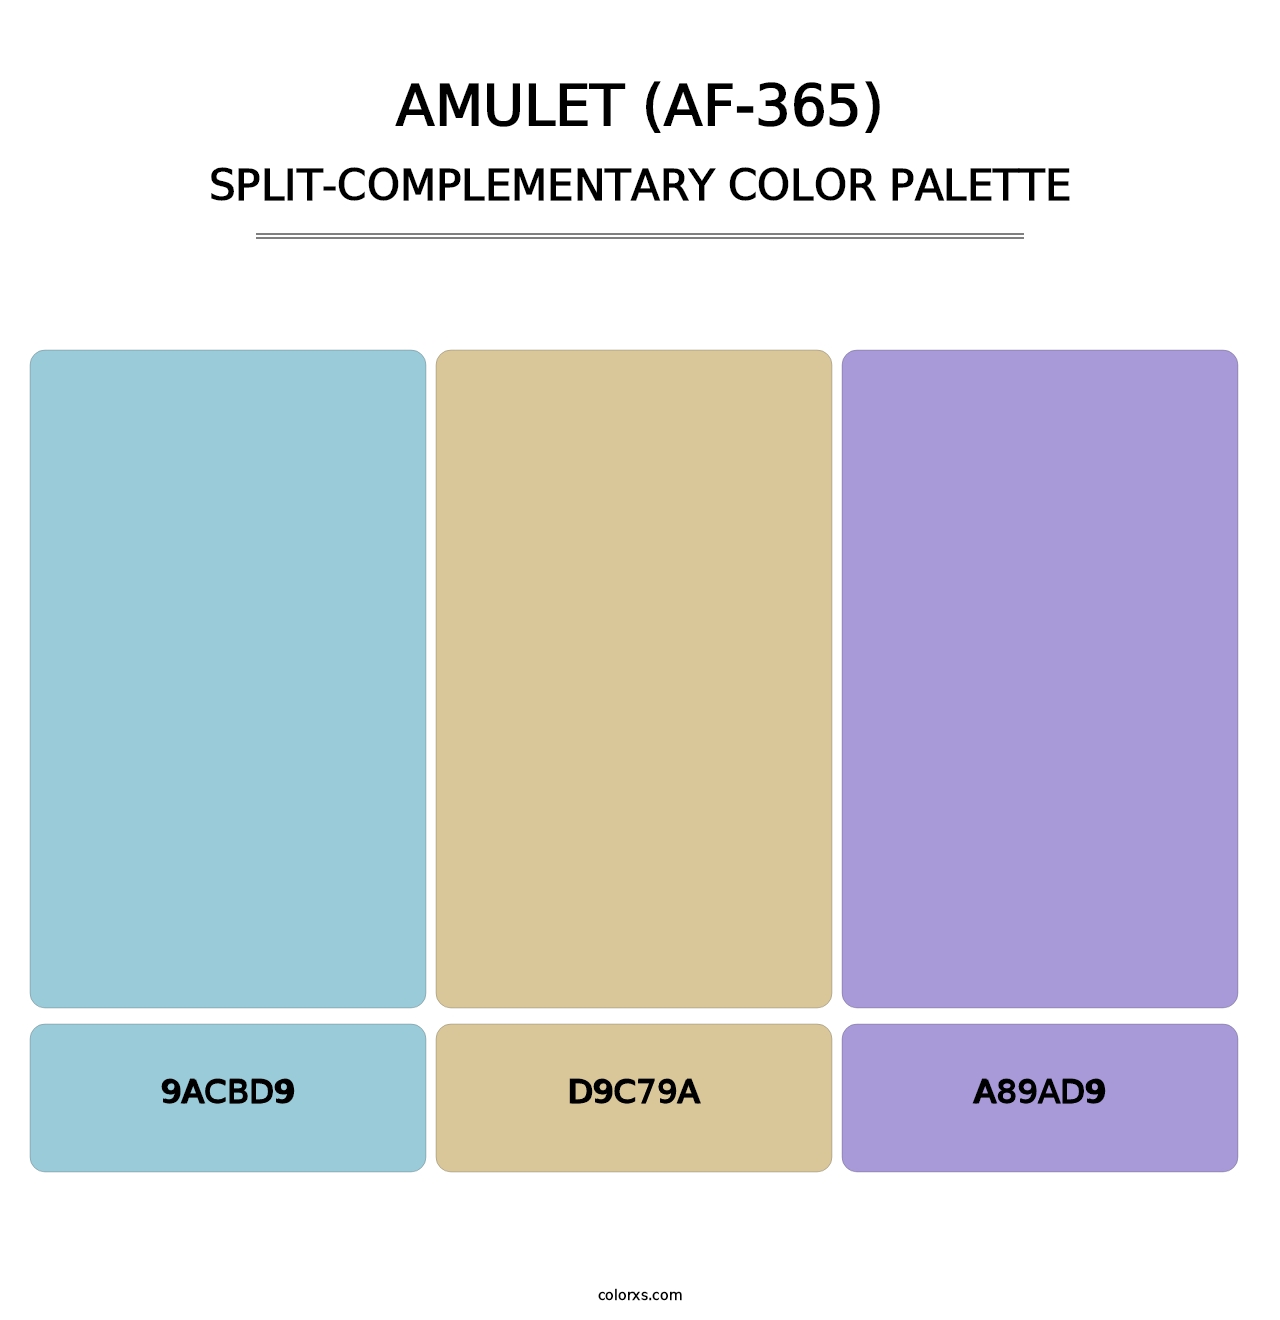 Amulet (AF-365) - Split-Complementary Color Palette